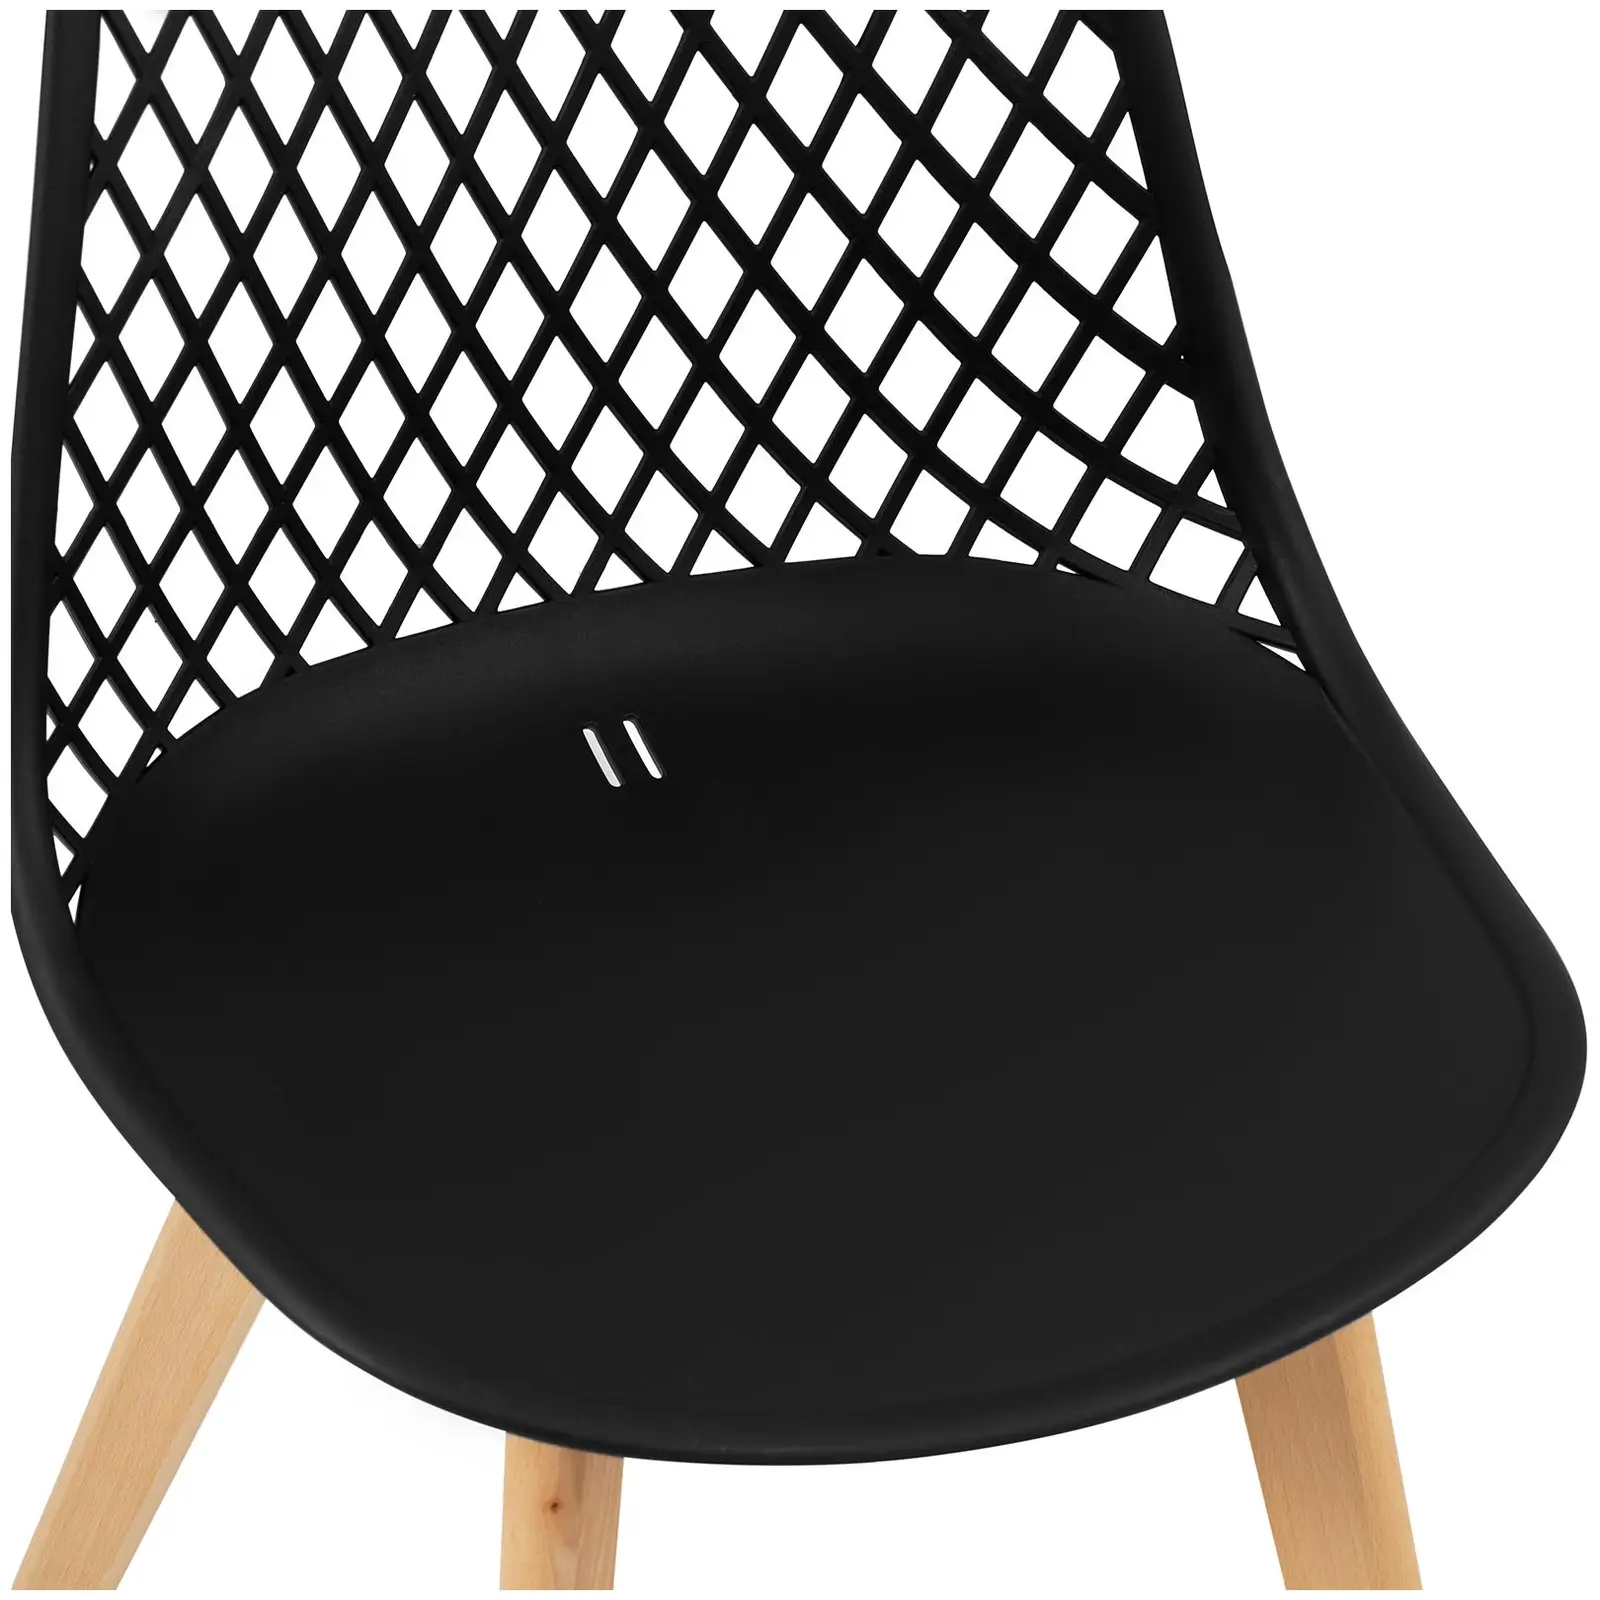 Chaise - Lot de 4 - 150 kg max. - Surface d'assise de 470 x 390 x 430 mm - Coloris noir - 5